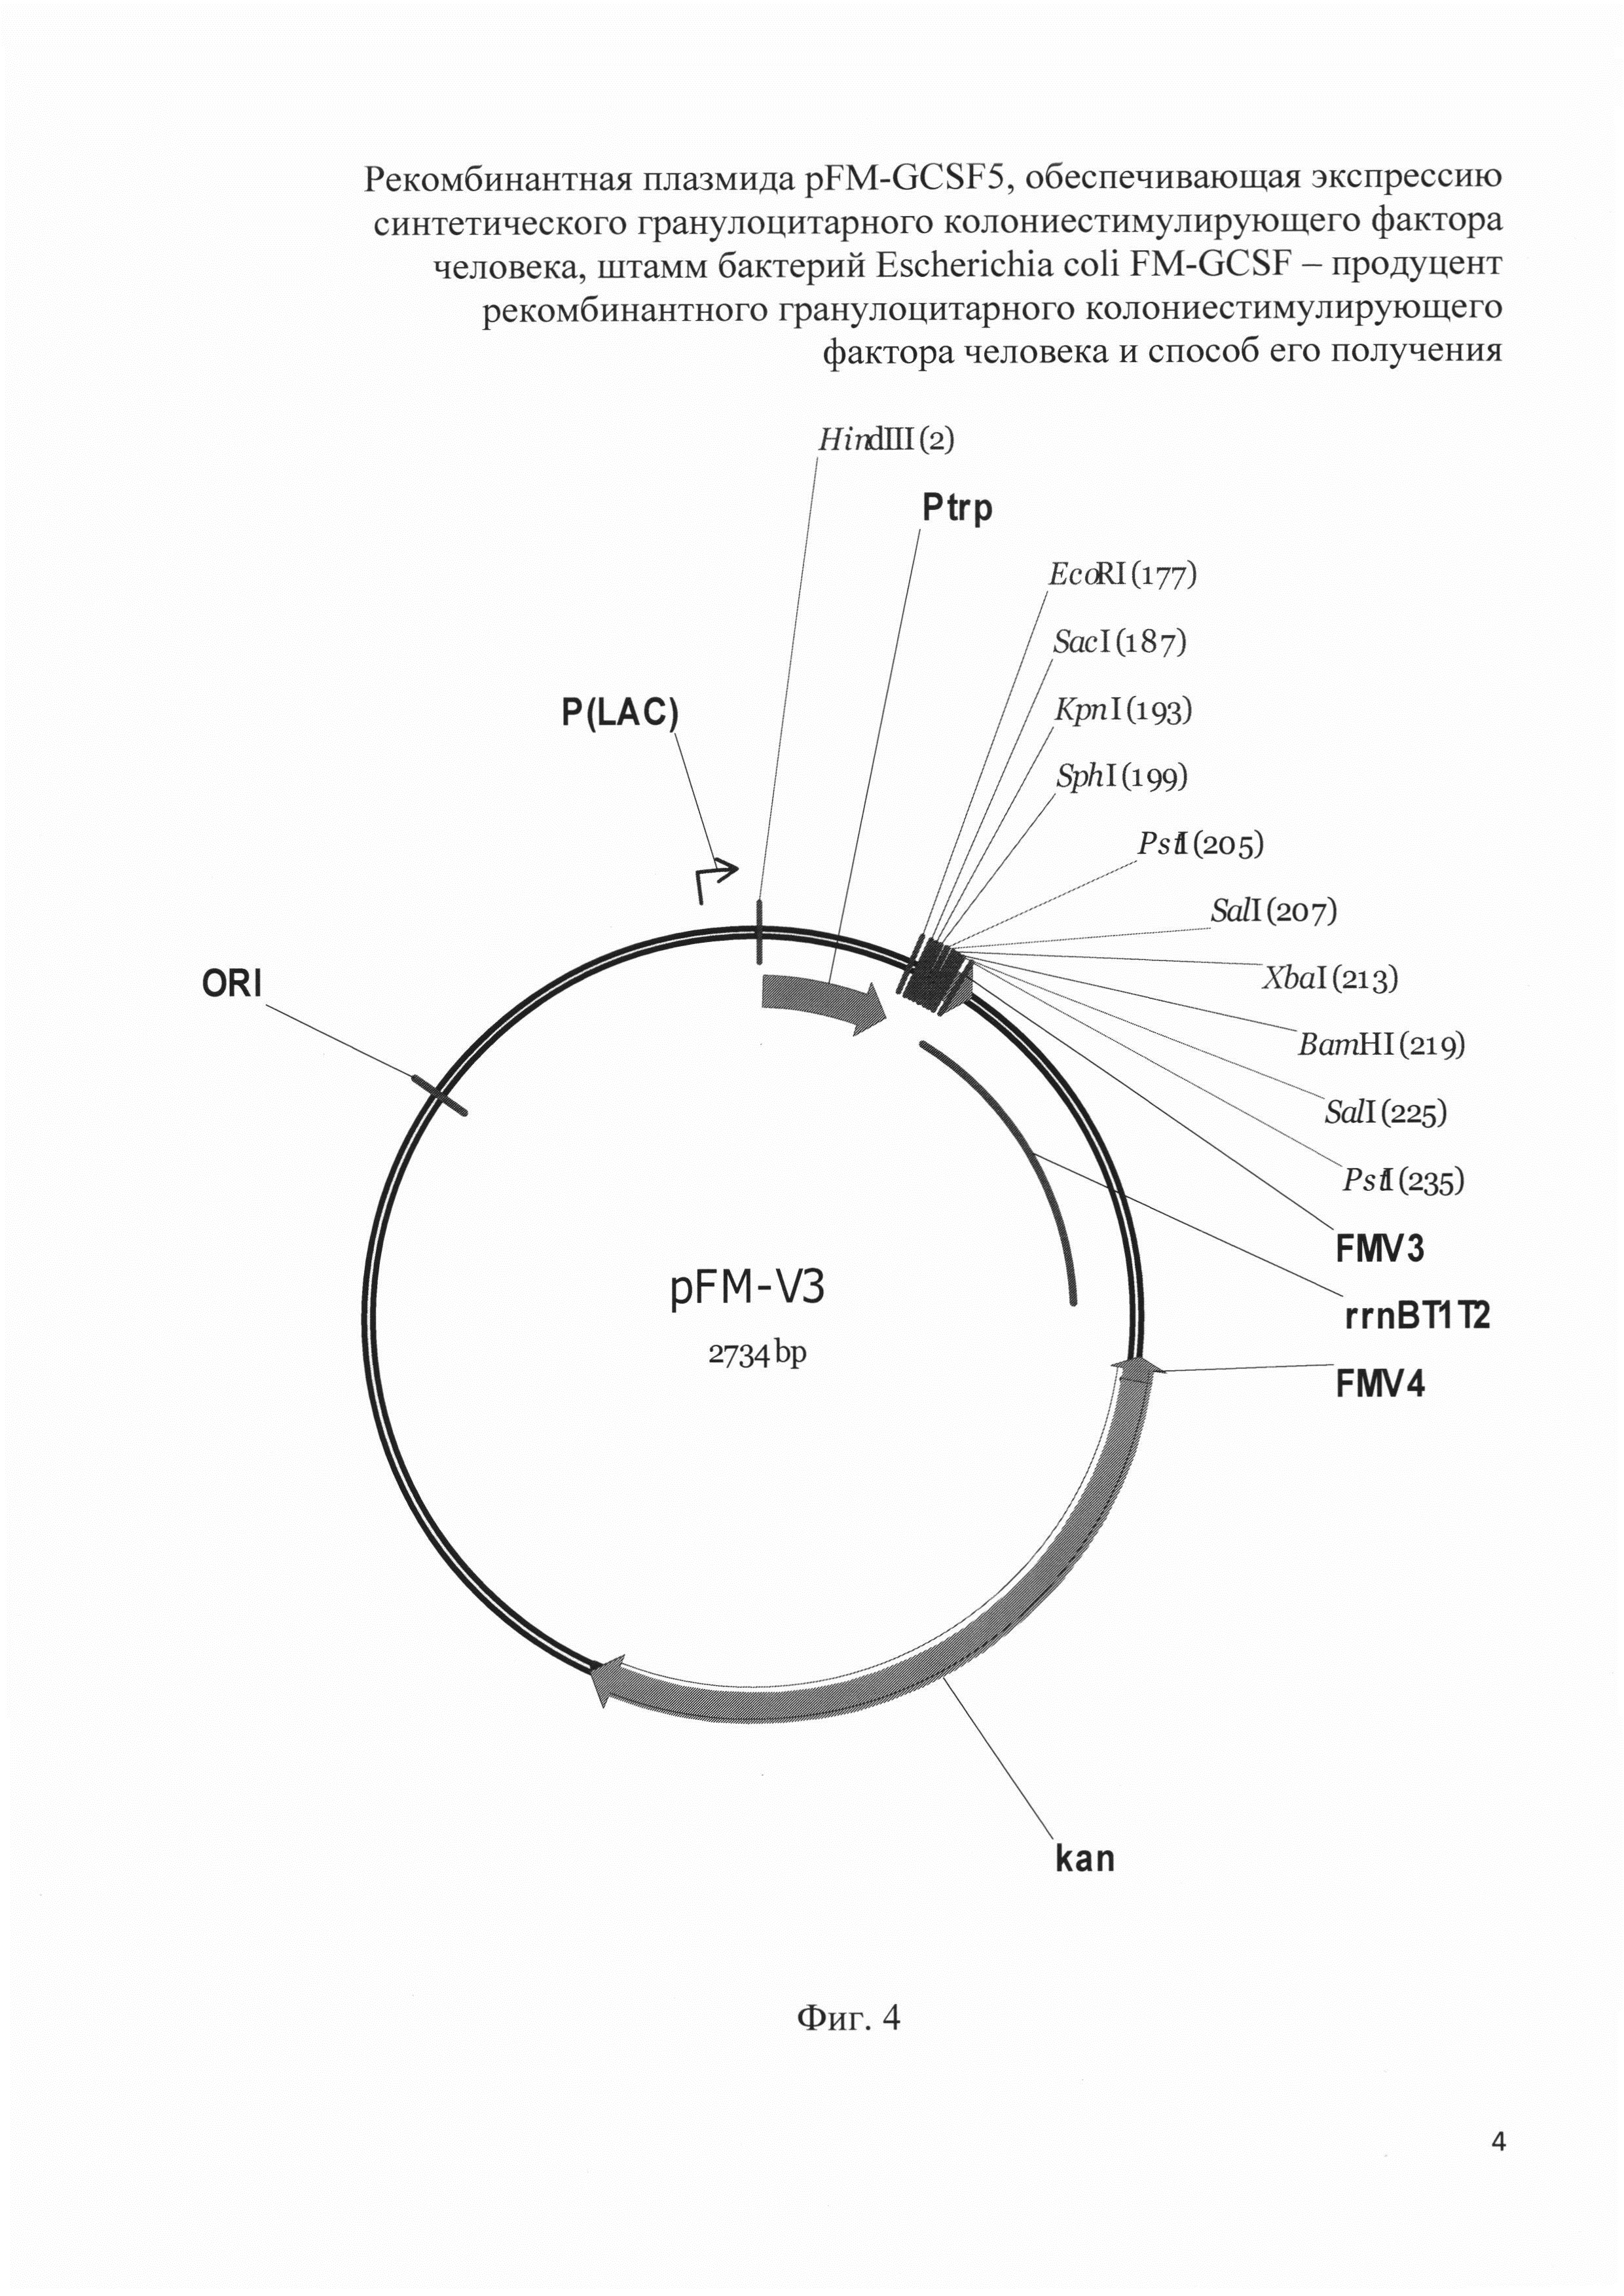 Рекомбинантная плазмида pFM-GCSF5, обеспечивающая экспрессию синтетического гранулоцитарного колониестимулирующего фактора человека, штамм бактерий Escherichia coli FM-GCSF - продуцент рекомбинантного гранулоцитарного колониестимулирующего фактора человека и способ его получения